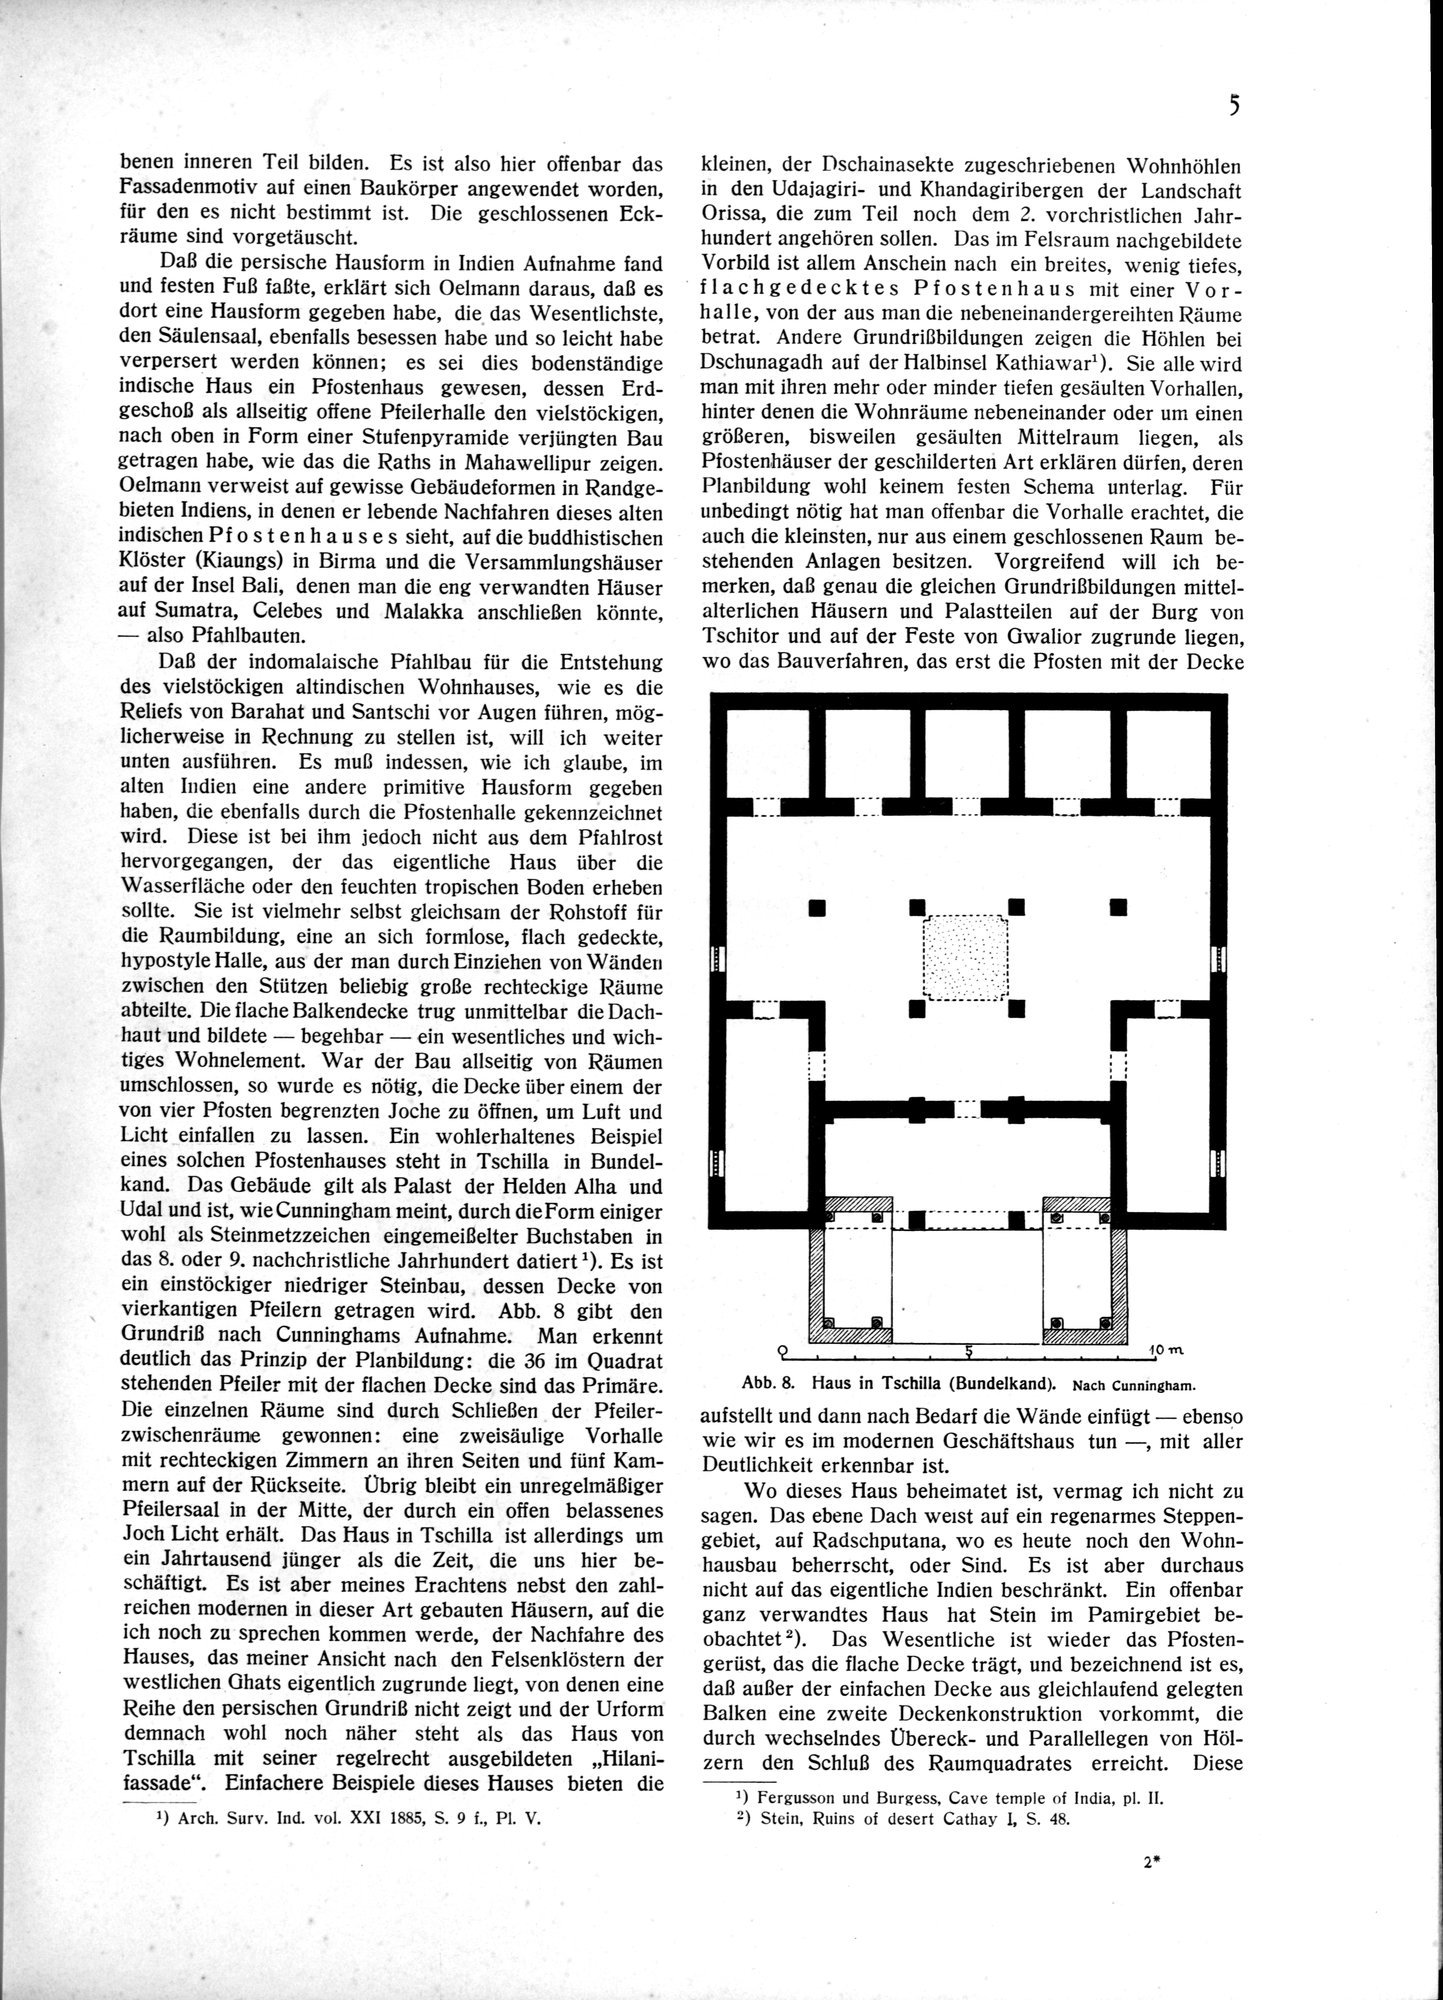 Indische Palaste und Wohnhauser : vol.1 / Page 15 (Grayscale High Resolution Image)